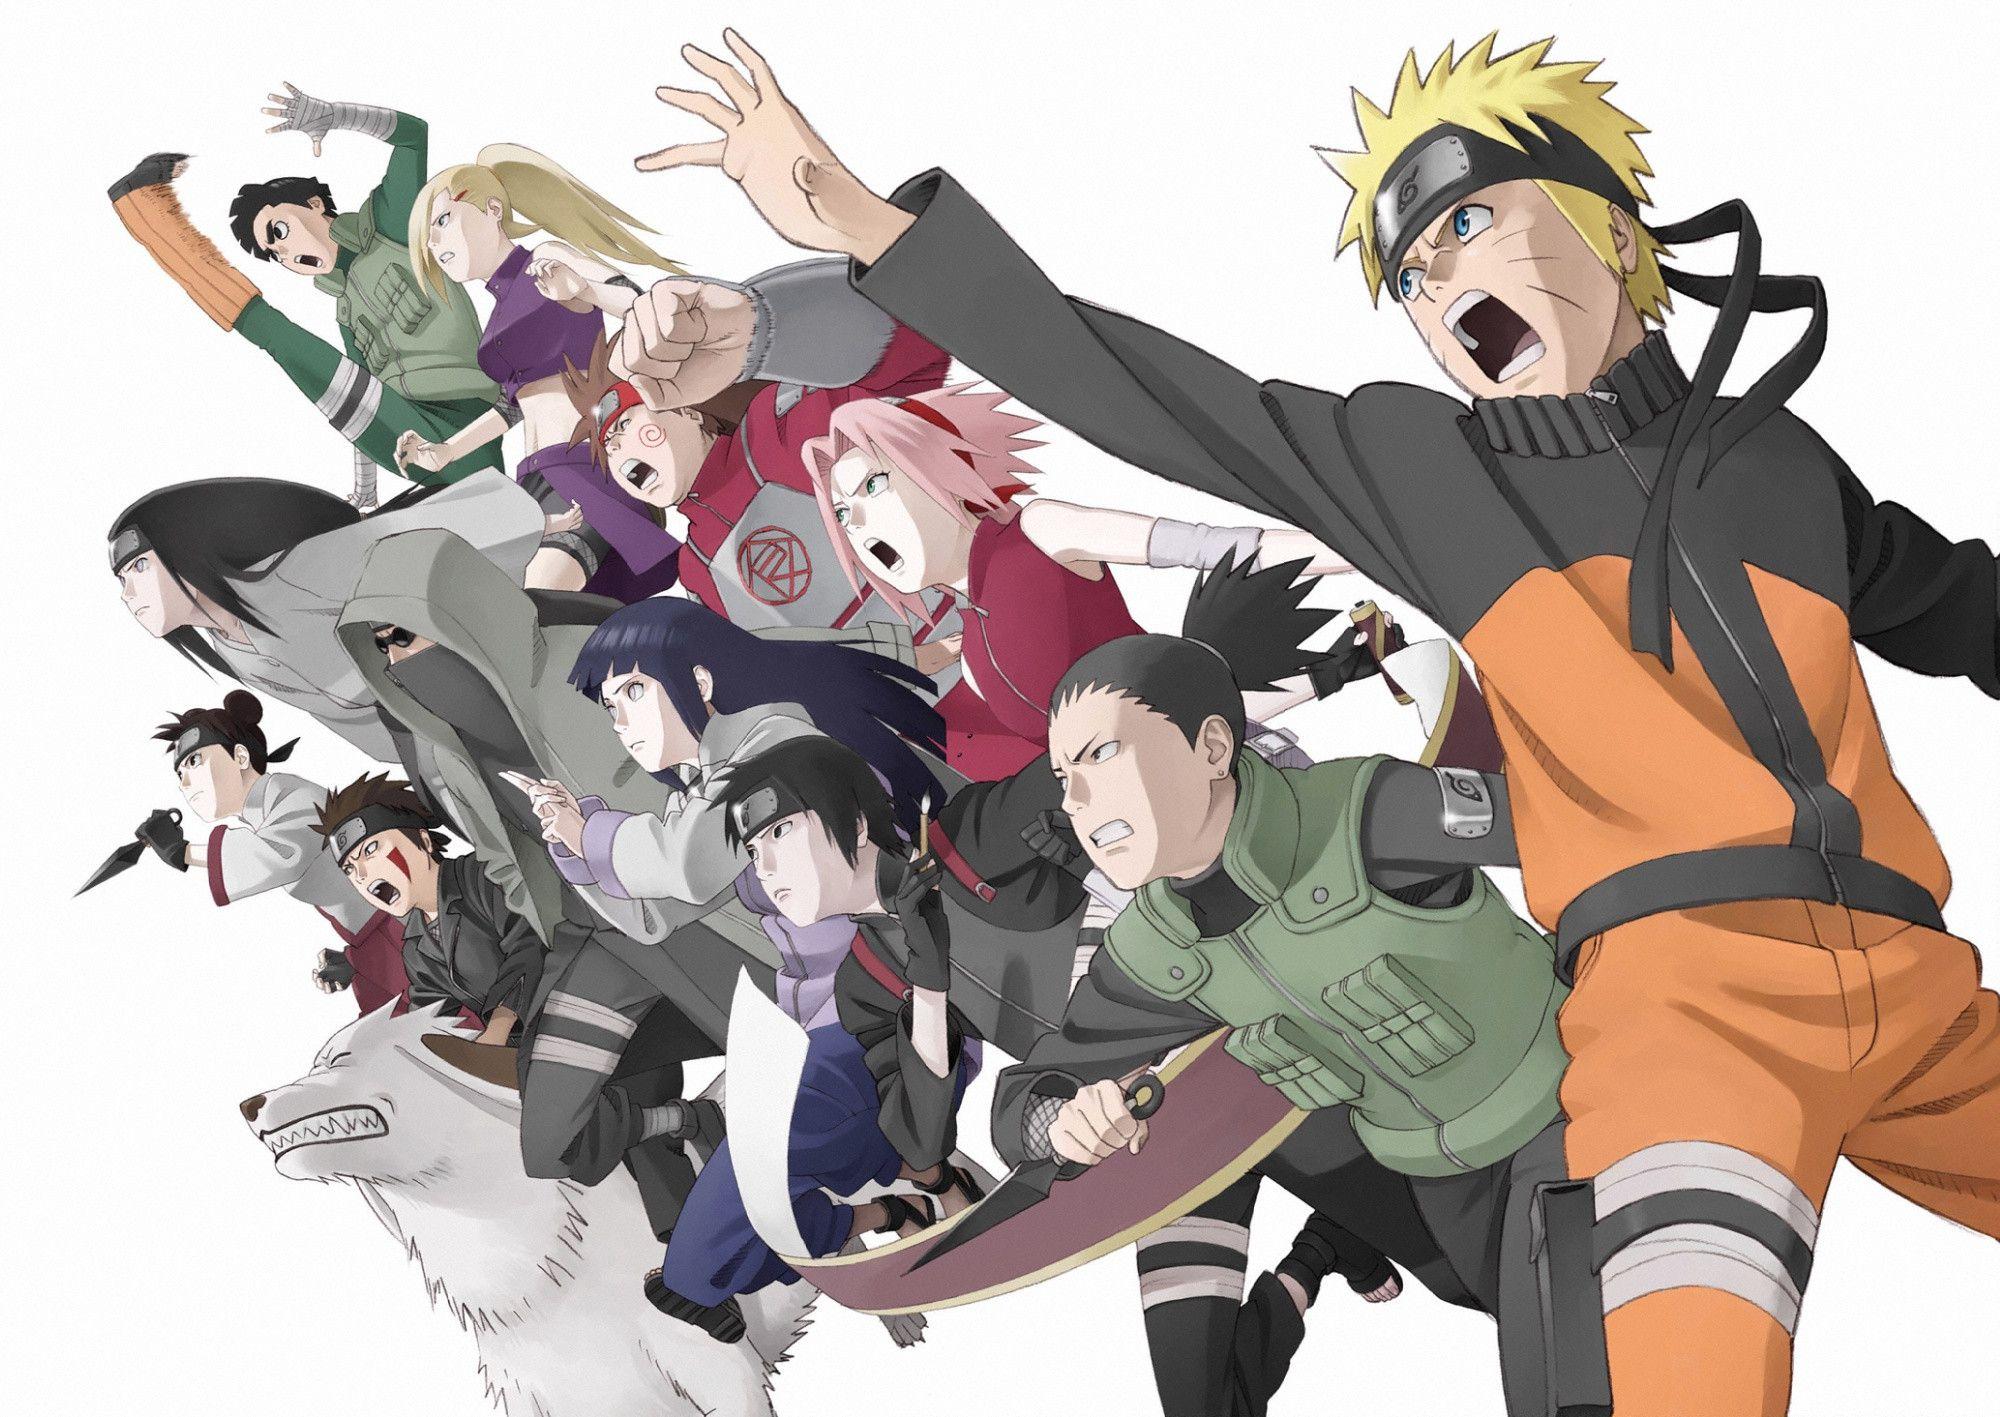 image For > Naruto Shippuden Hinata Hyuga Wallpaper